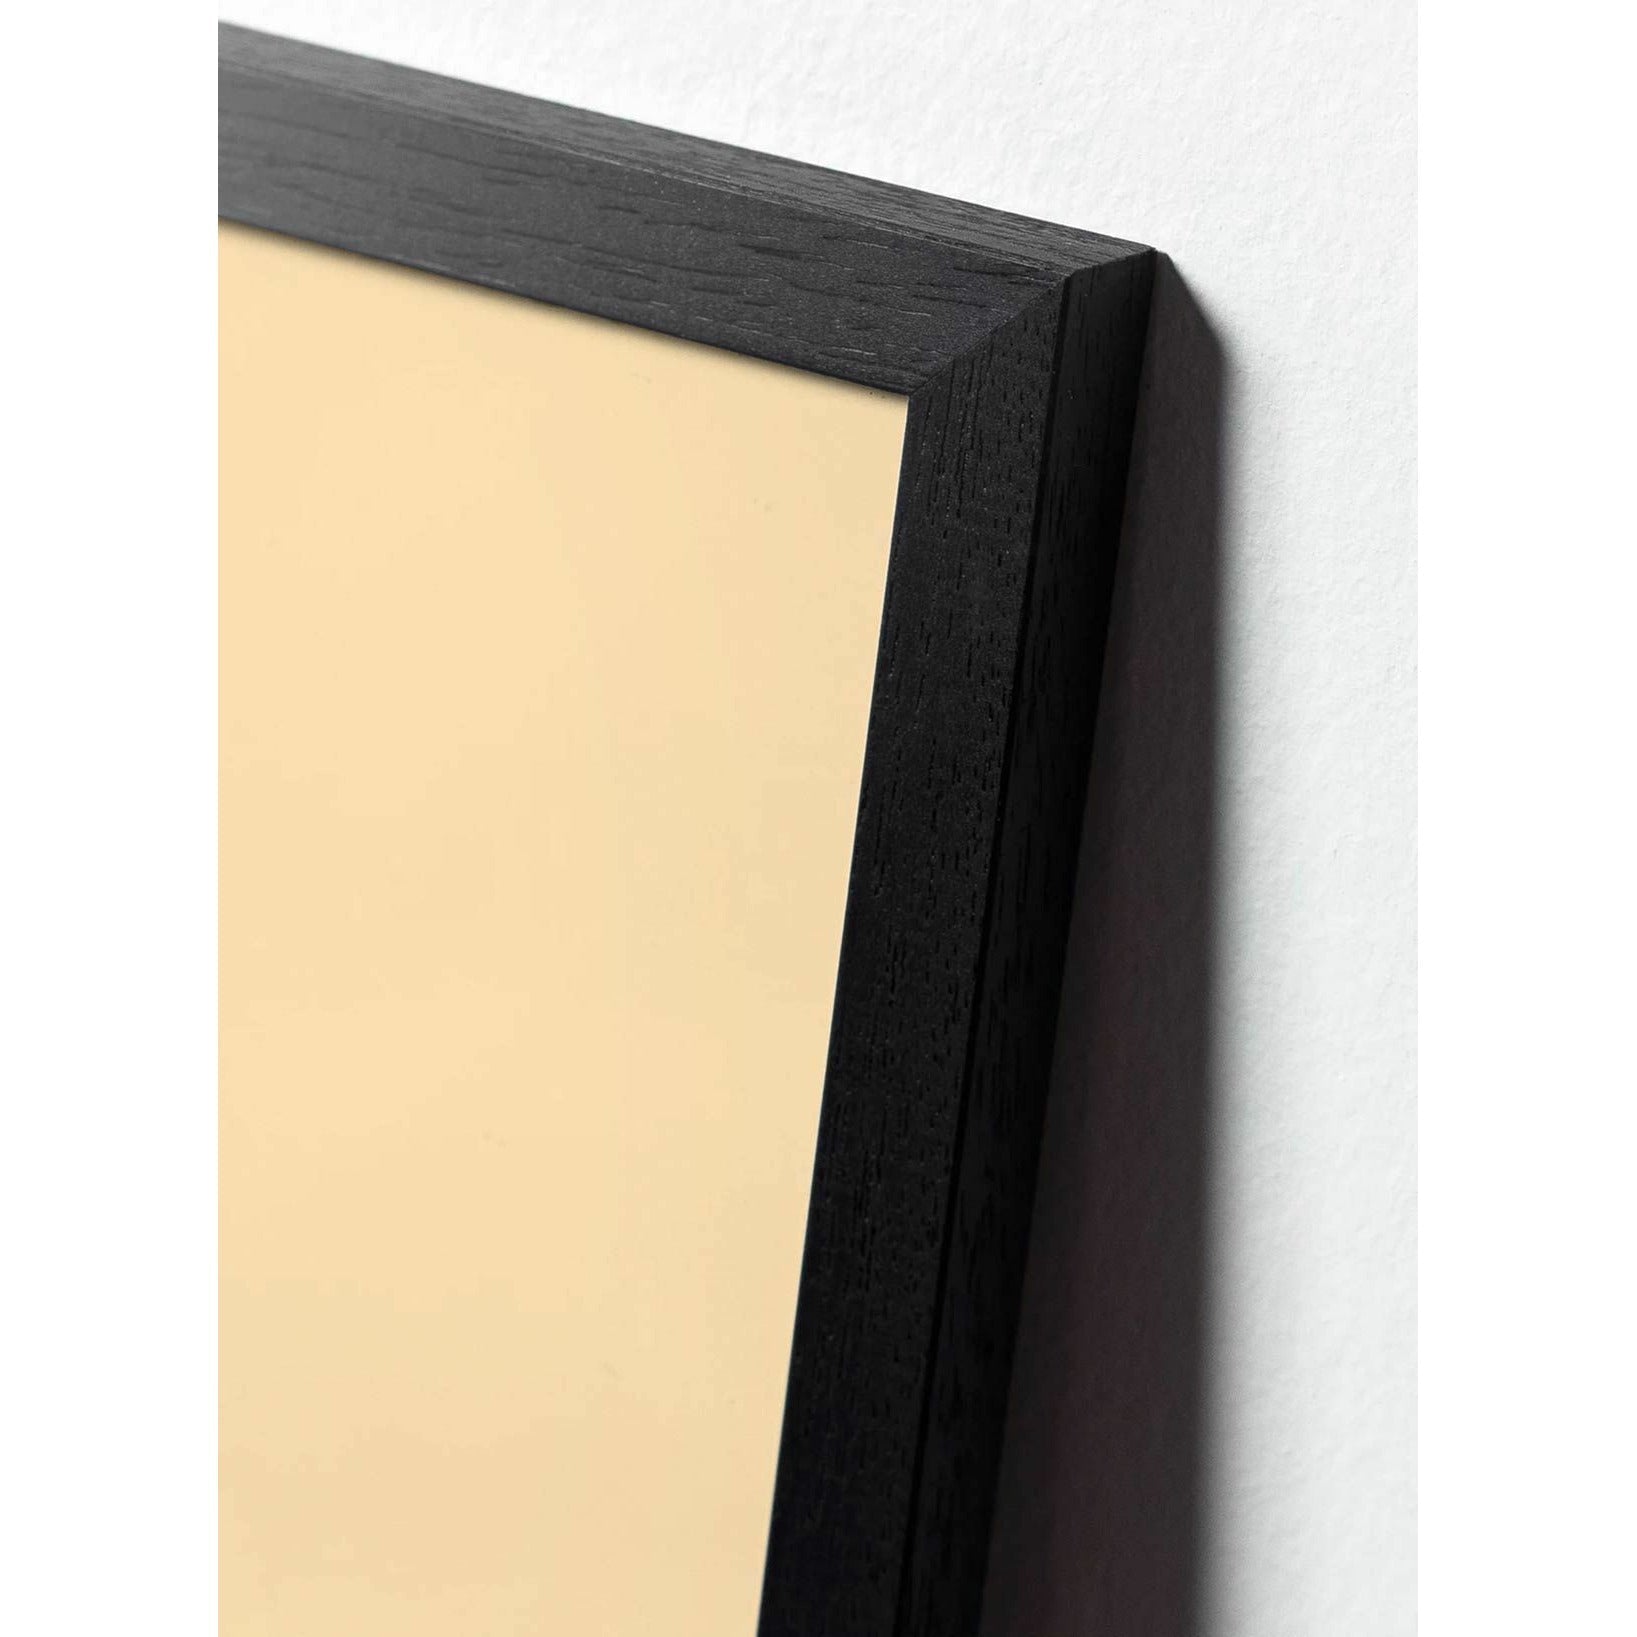 Pomysły Pine Classic Plakat, rama w czarnym lakierowanym drewnie 50x70 cm, ciemnoniebieskie tło